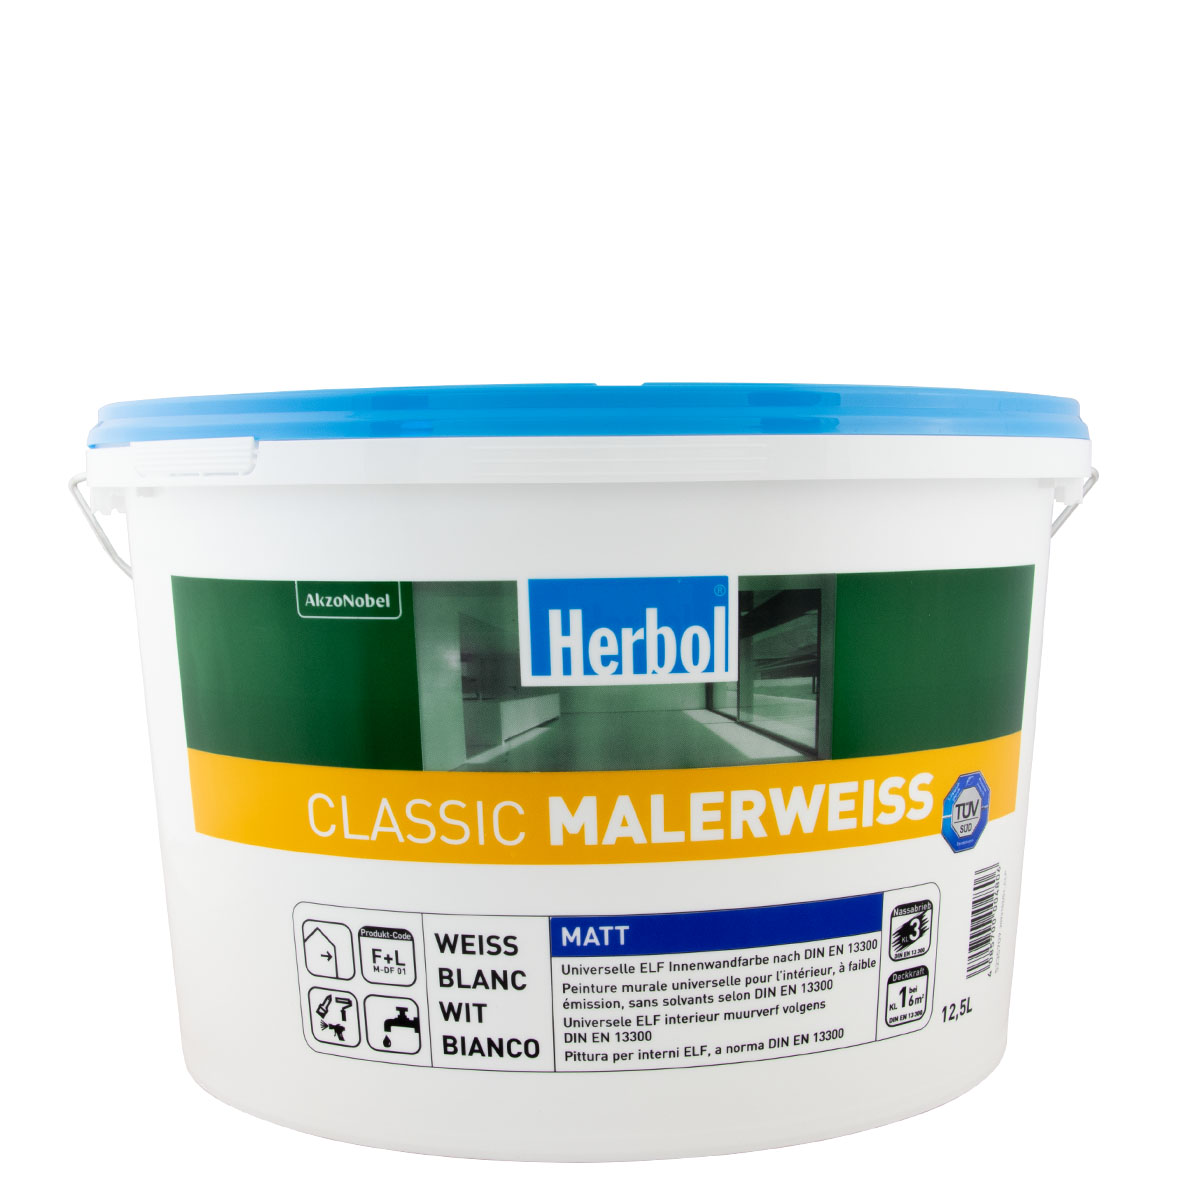 Herbol Classic Malerweiss 12,5L weiss, Wandfarbe, matt